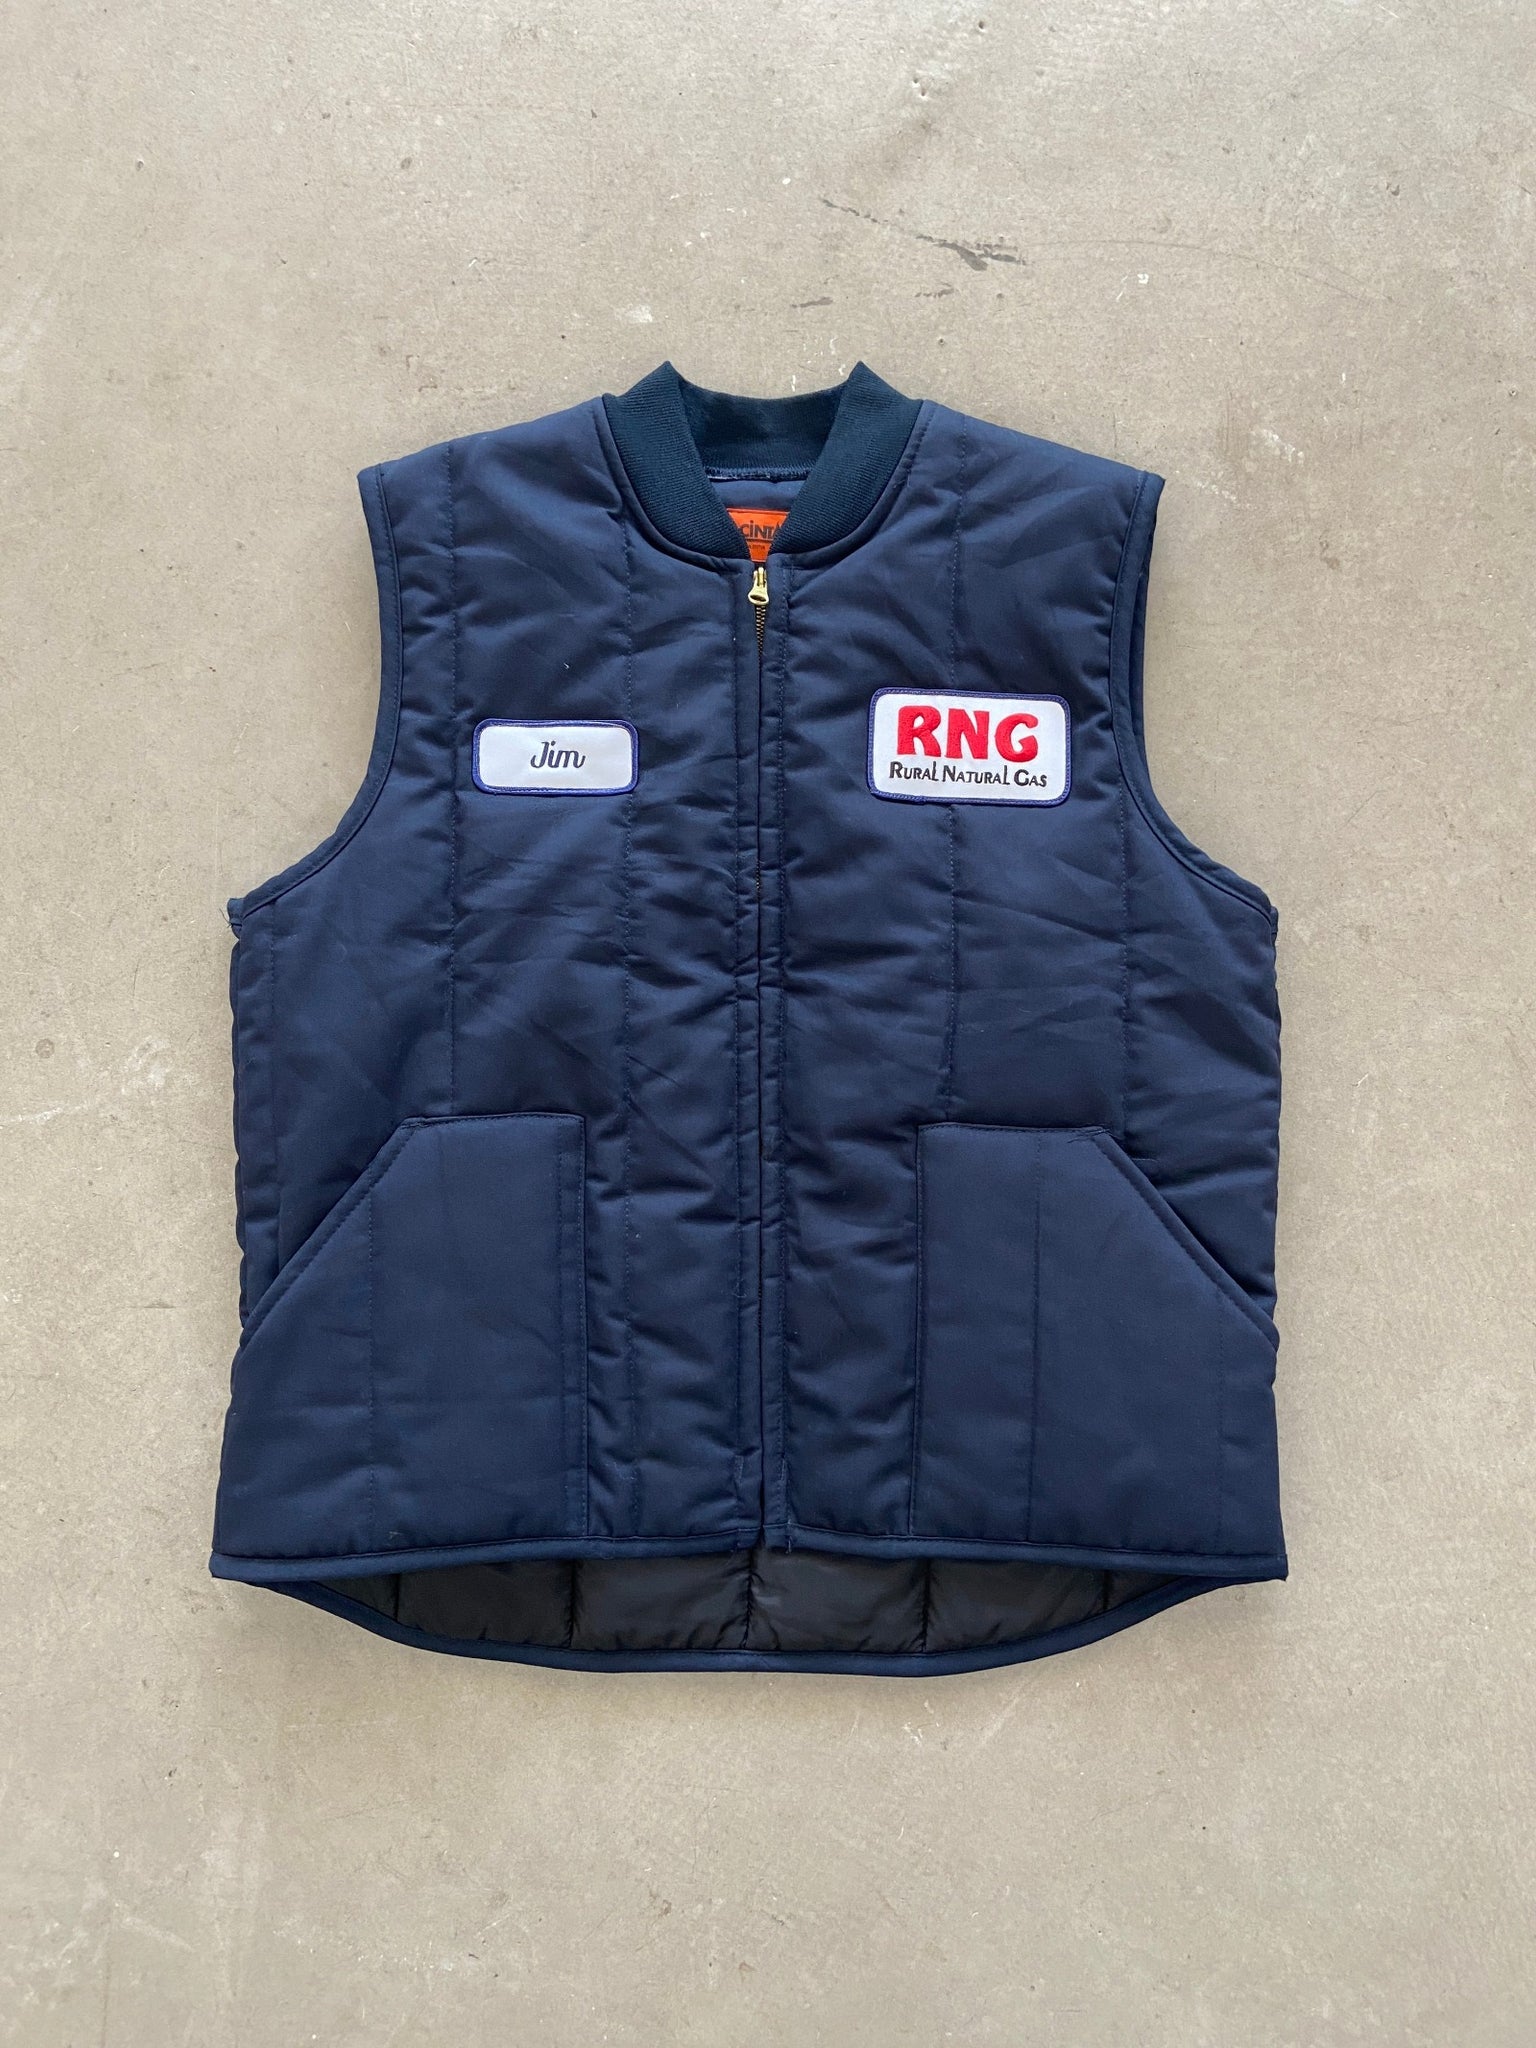 Cintas RNG Work Vest - L